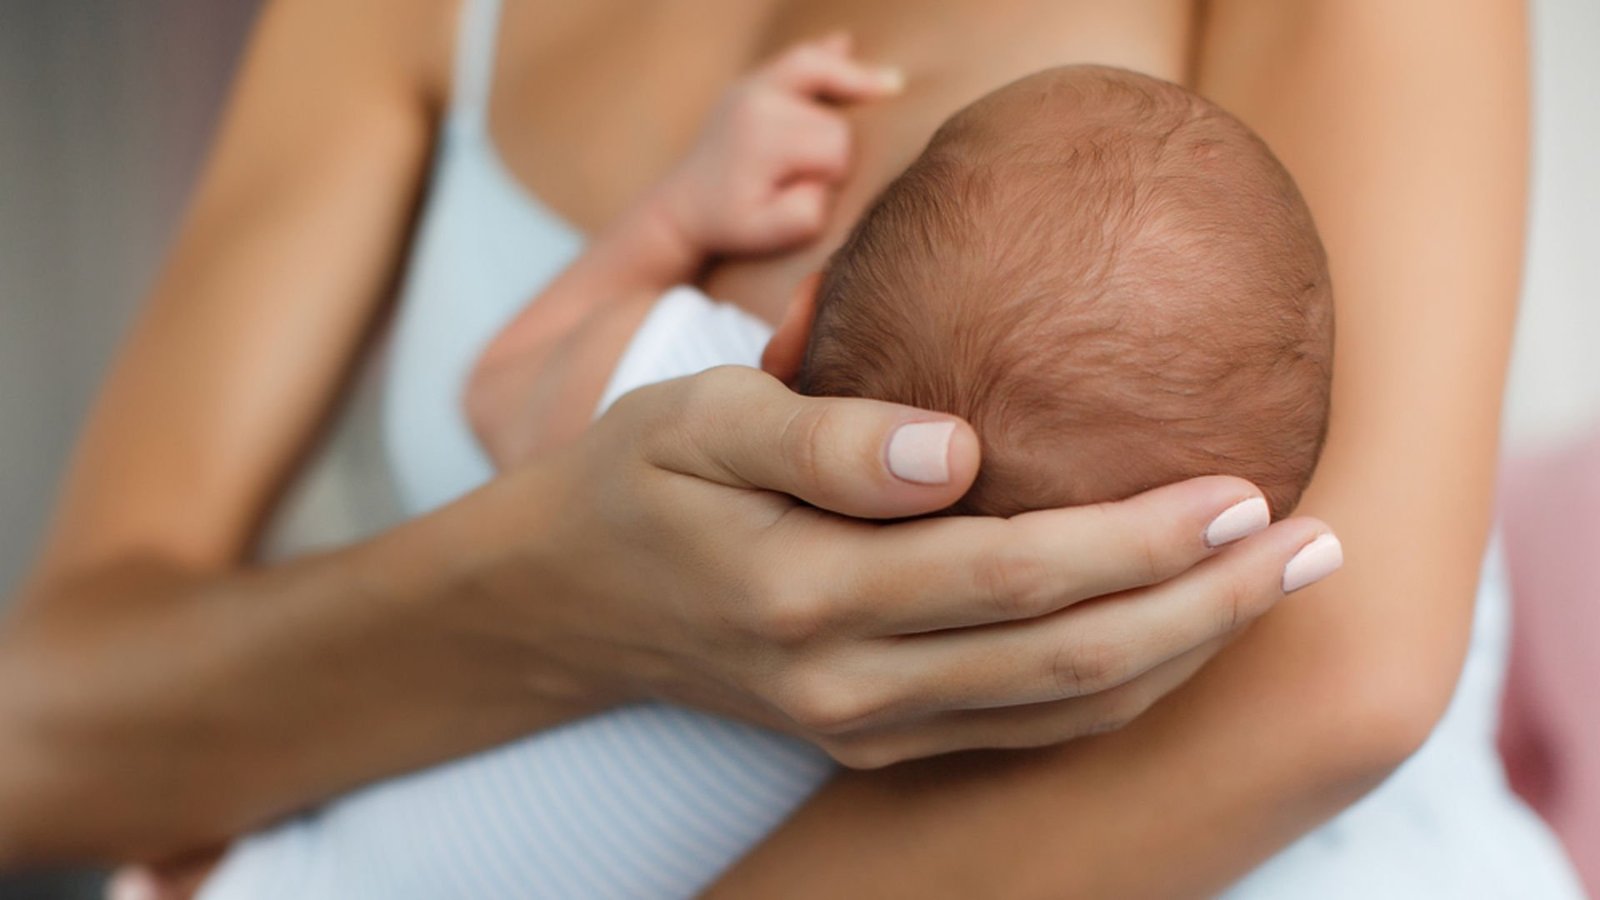 В ВОЗ рассказали, могут ли матери кормить ребенка грудью, когда заражены COVID-19